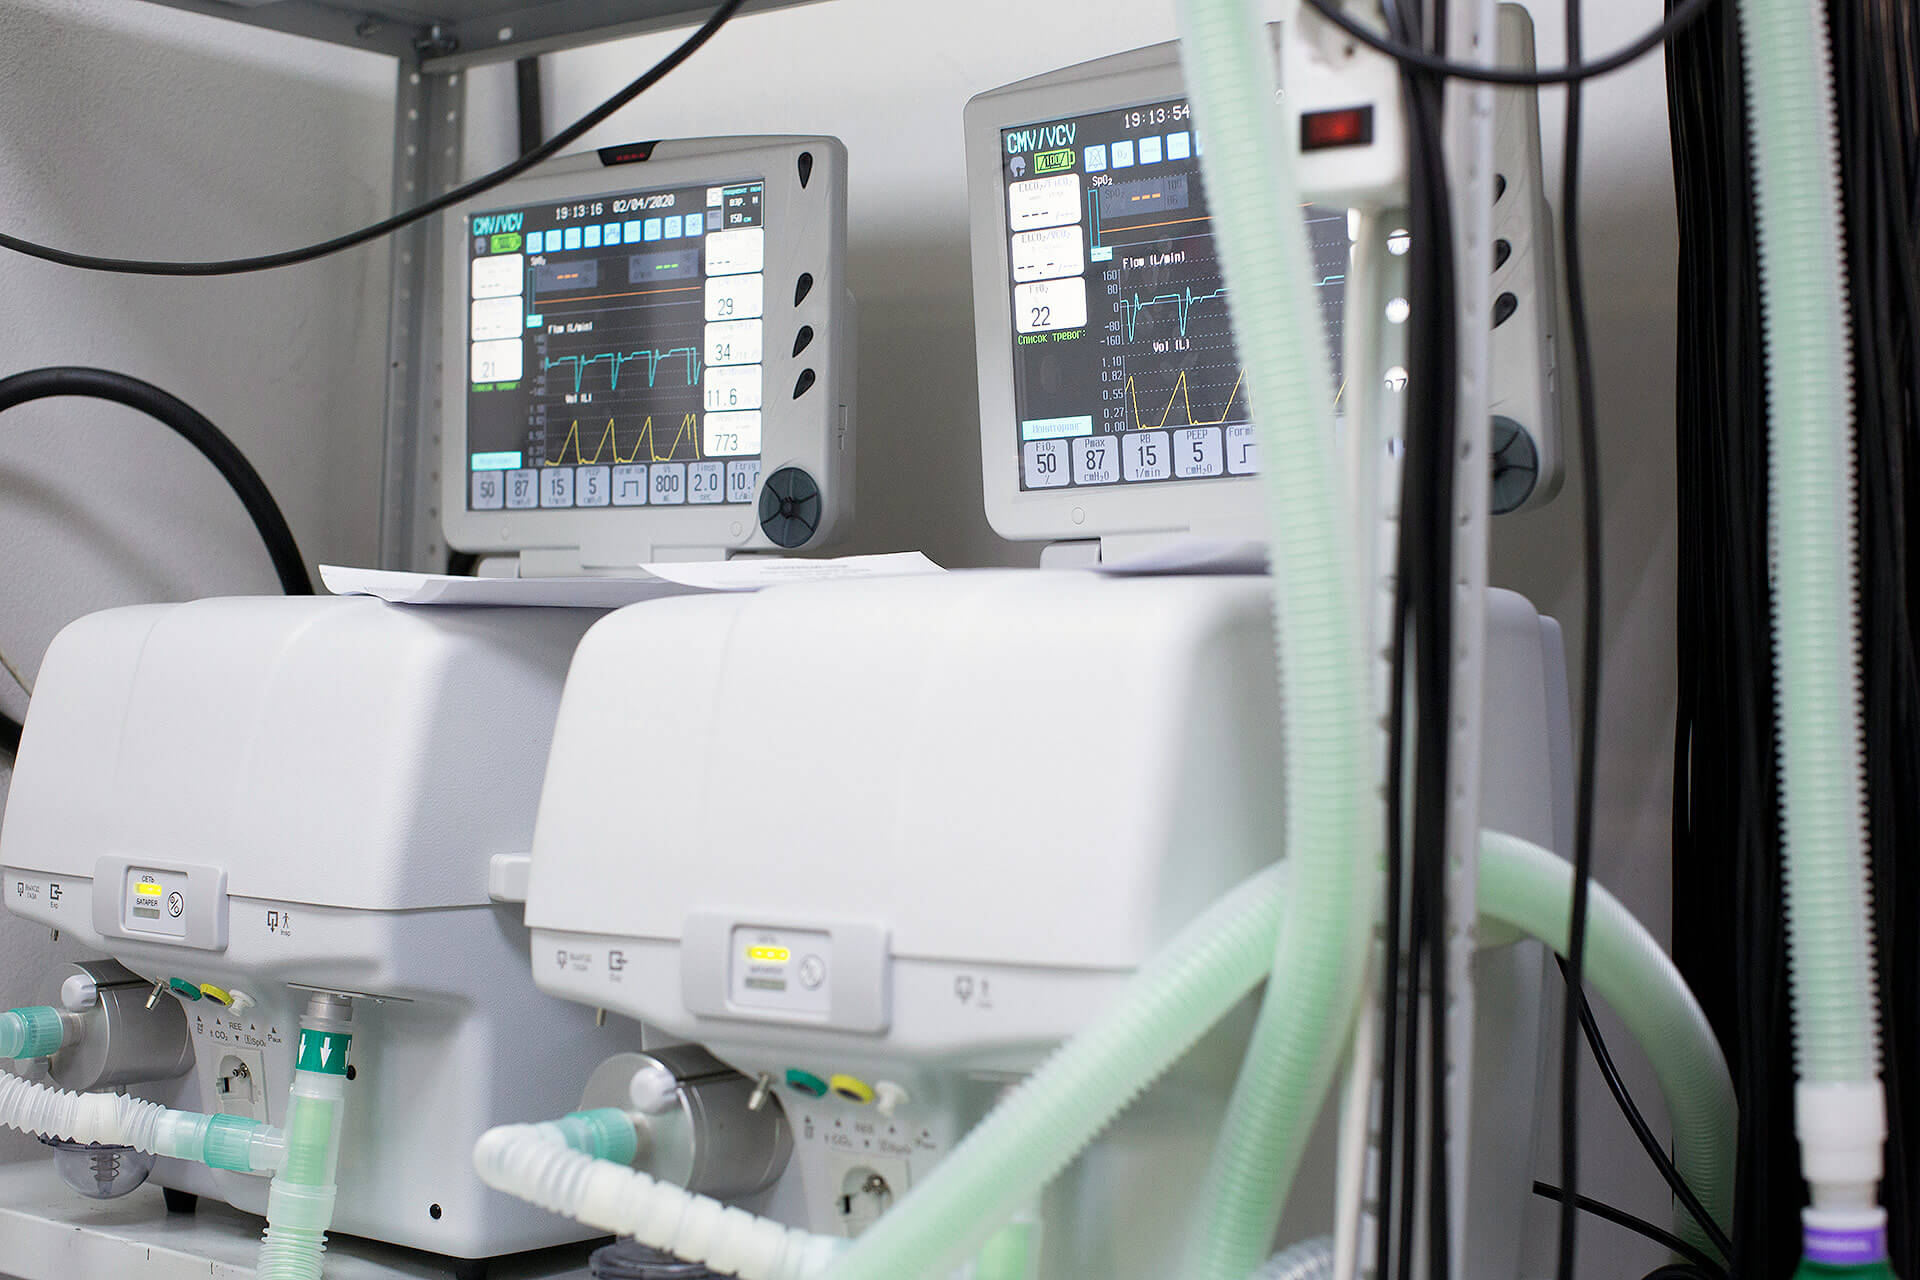 ¿Por qué se producen los fallos eléctricos en hospitales?